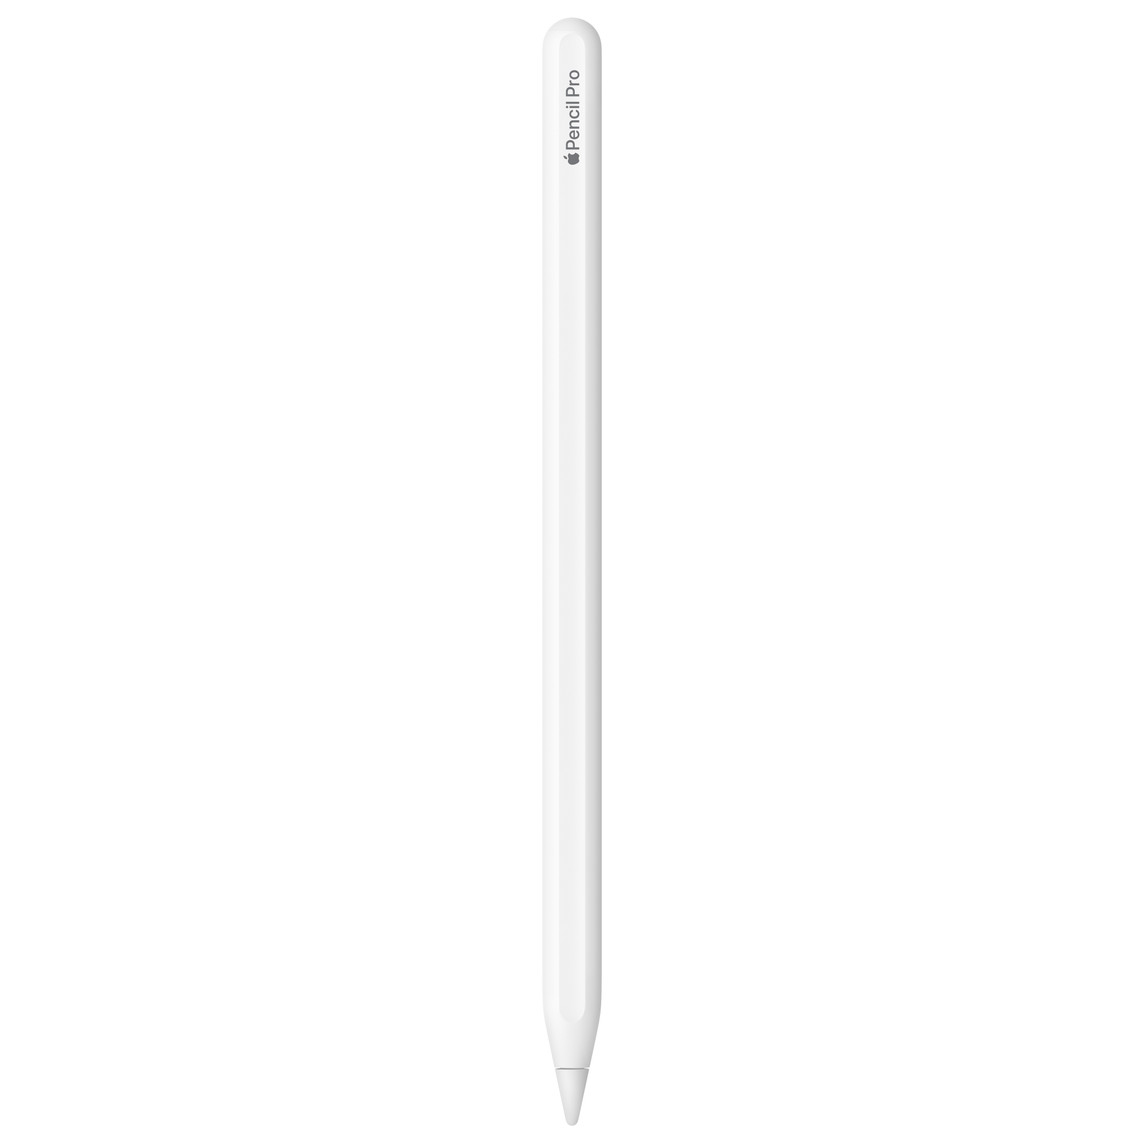 Apple Pencil Pro, bílý, gravírování Apple Pencil Pro, slovo Apple je vyjádřené logem Apple